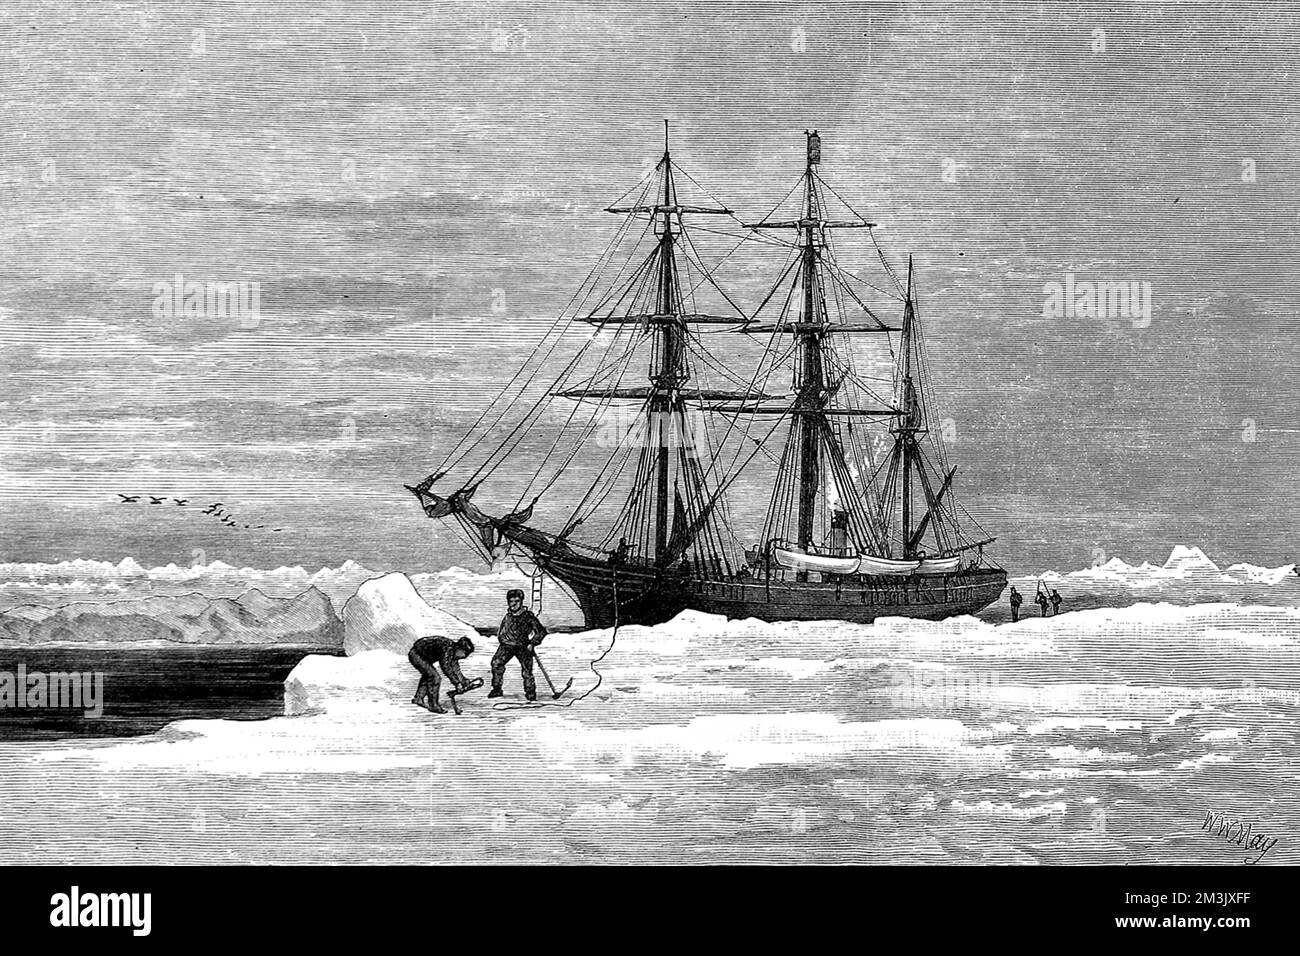 Die Yacht „Eira“, die von Benjamin Leigh Smith verwendet wurde, um die arktische Region um Franz Joseph Land und den Ozean nördlich von Russland, 1881-1882, zu erkunden. Die „Eira“ wurde im Eis gefangen und sank im August 1881 vor Cape Flora. Die Crew erlebte dann eine epische Reise in Sicherheit, schleppte die Boote über Eis und segelte durch einen starken Sturm, um zu versuchen, Nova Zembla zu erreichen. Sir Allen Young rettete sie auf dem Schiff "Hope" in der Matotchkin-Straße, August 1882. Datum: 1882 Stockfoto